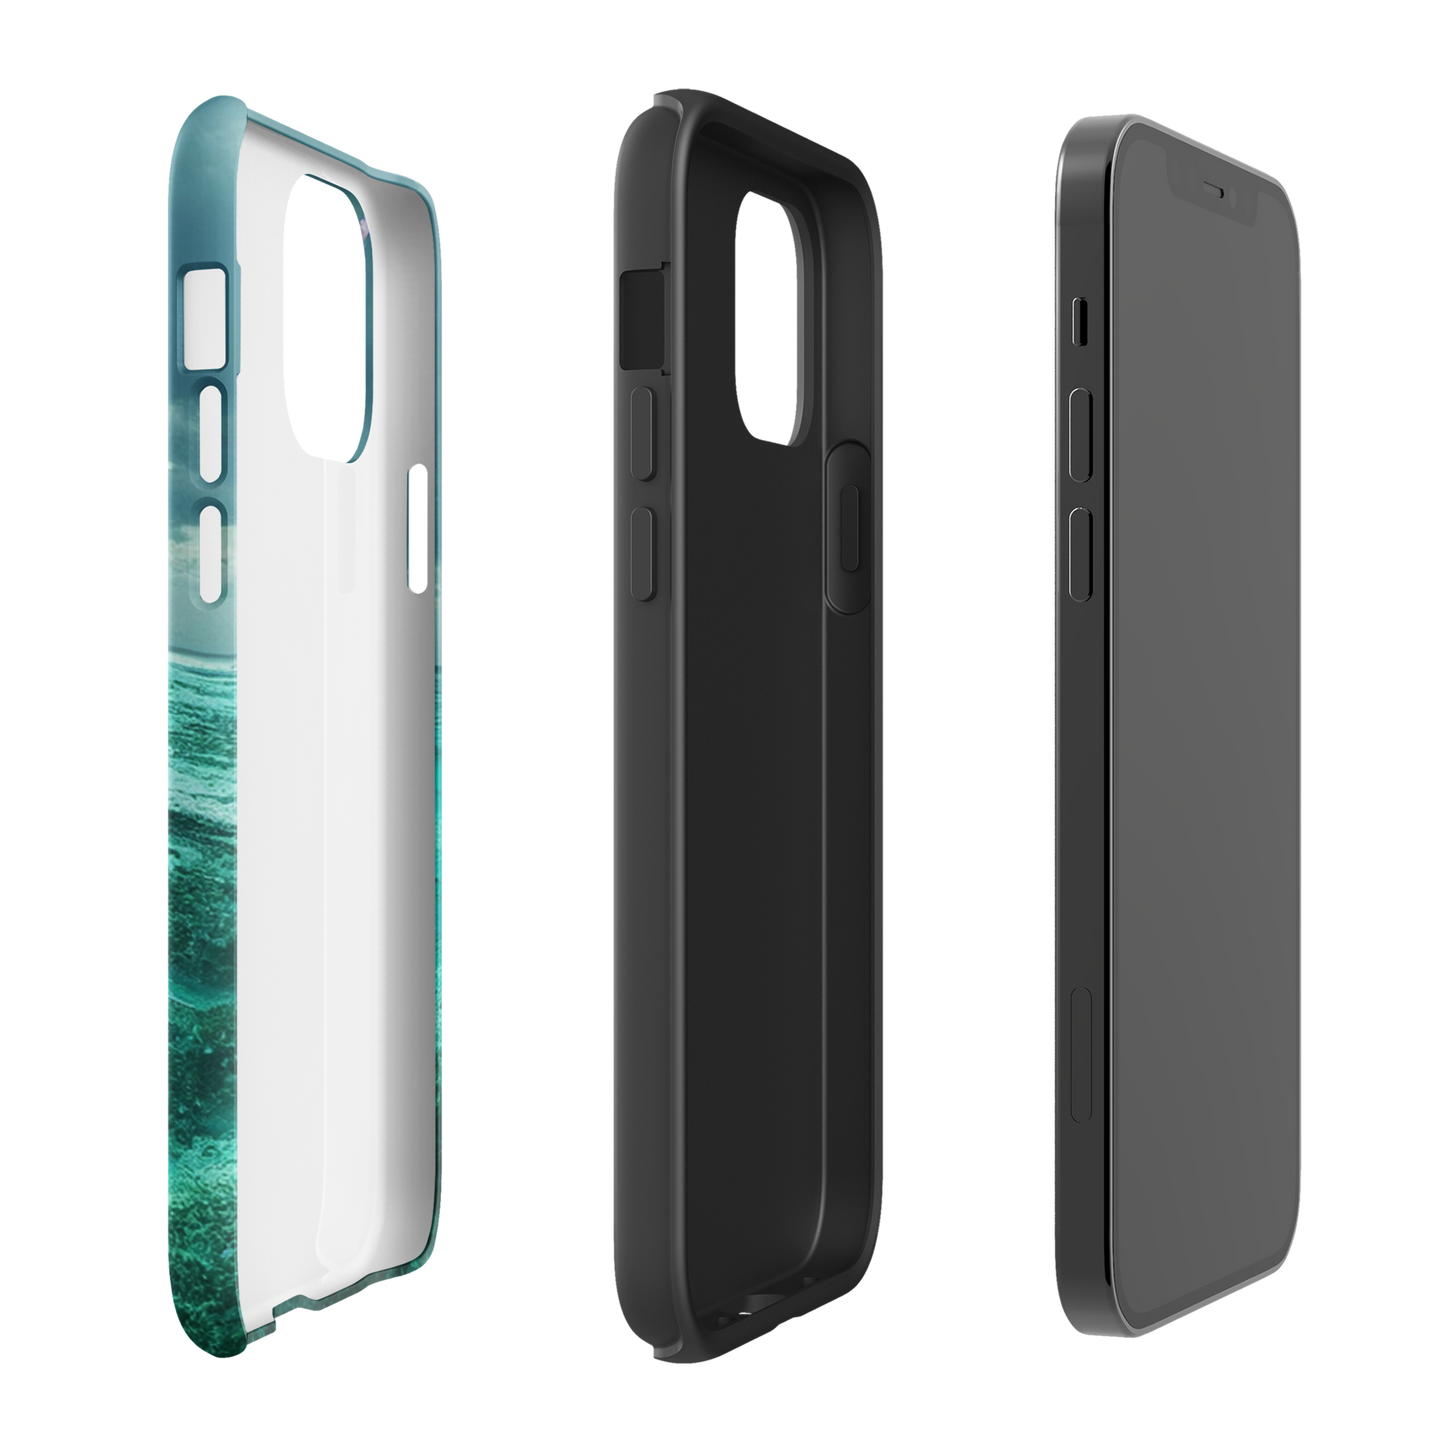 Tough iPhone case - Nick Olsson Digital Design